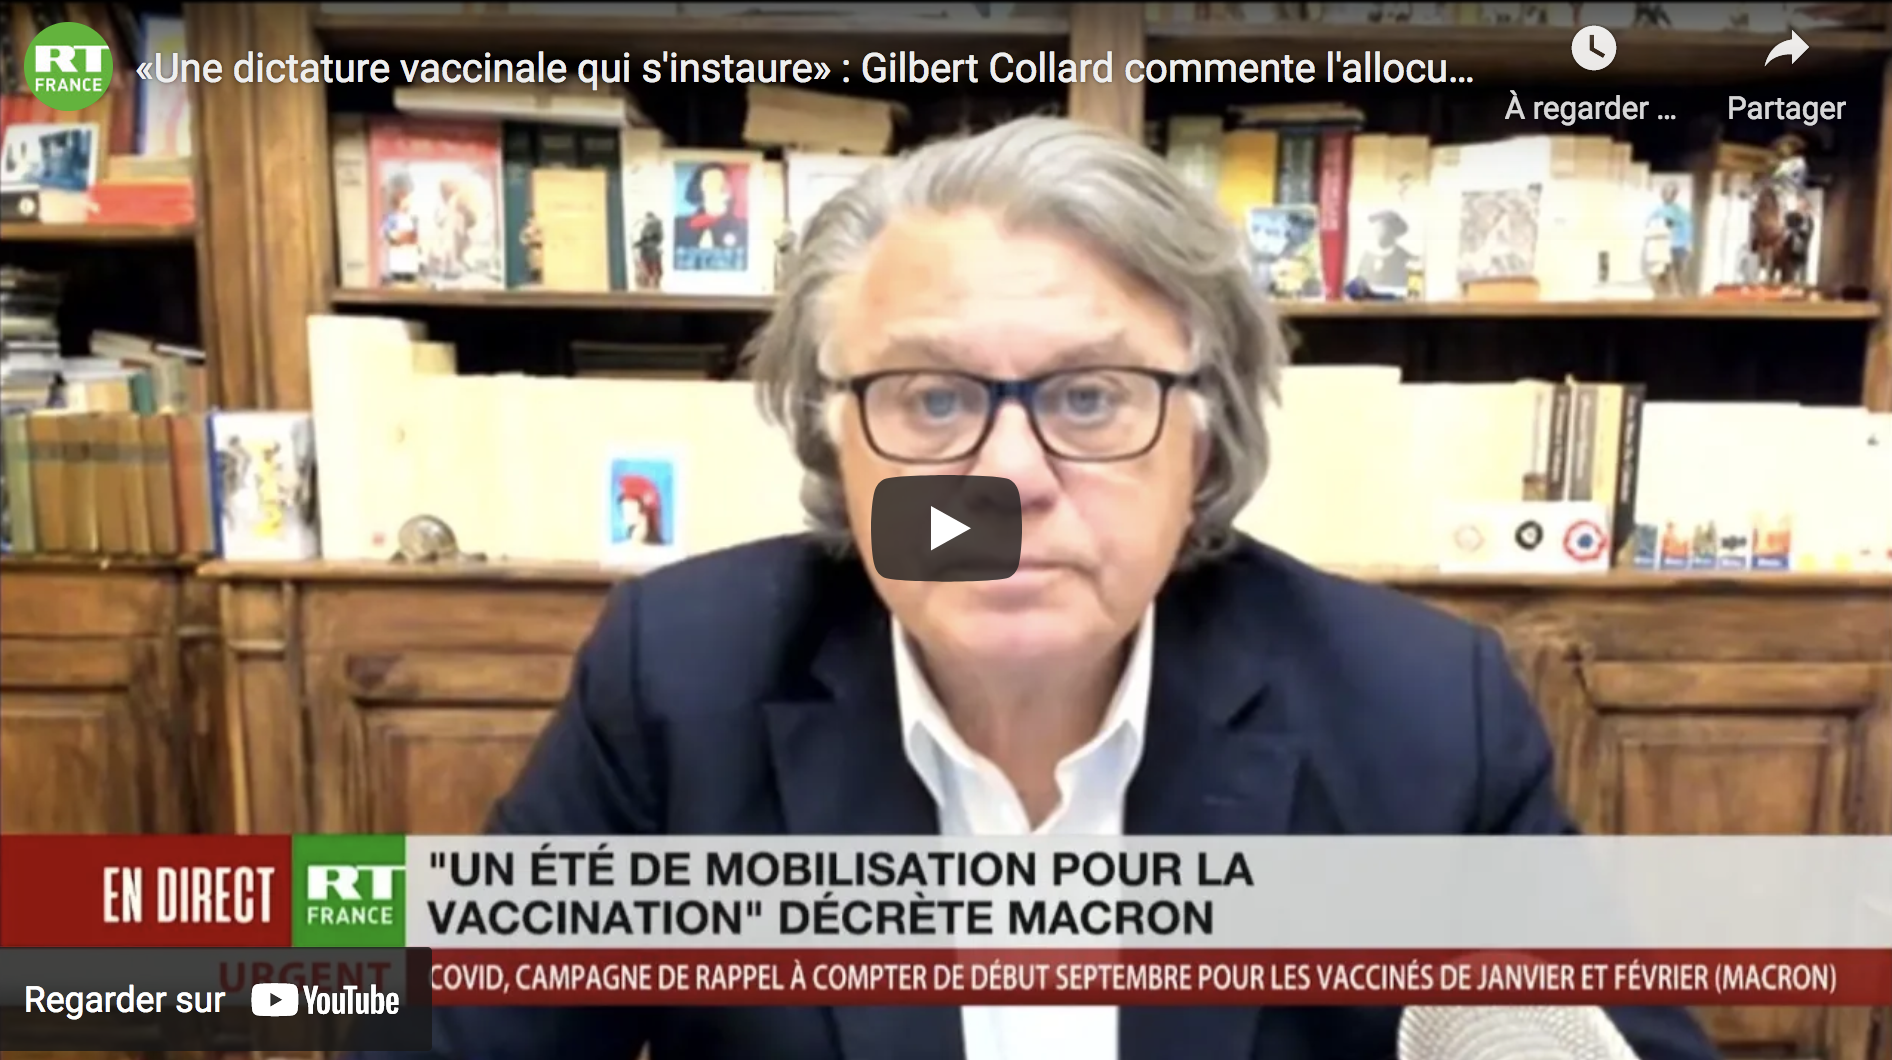 « Une dictature vaccinale qui s’instaure » : Me Gilbert Collard commente l’allocution de Macron (VIDÉO)